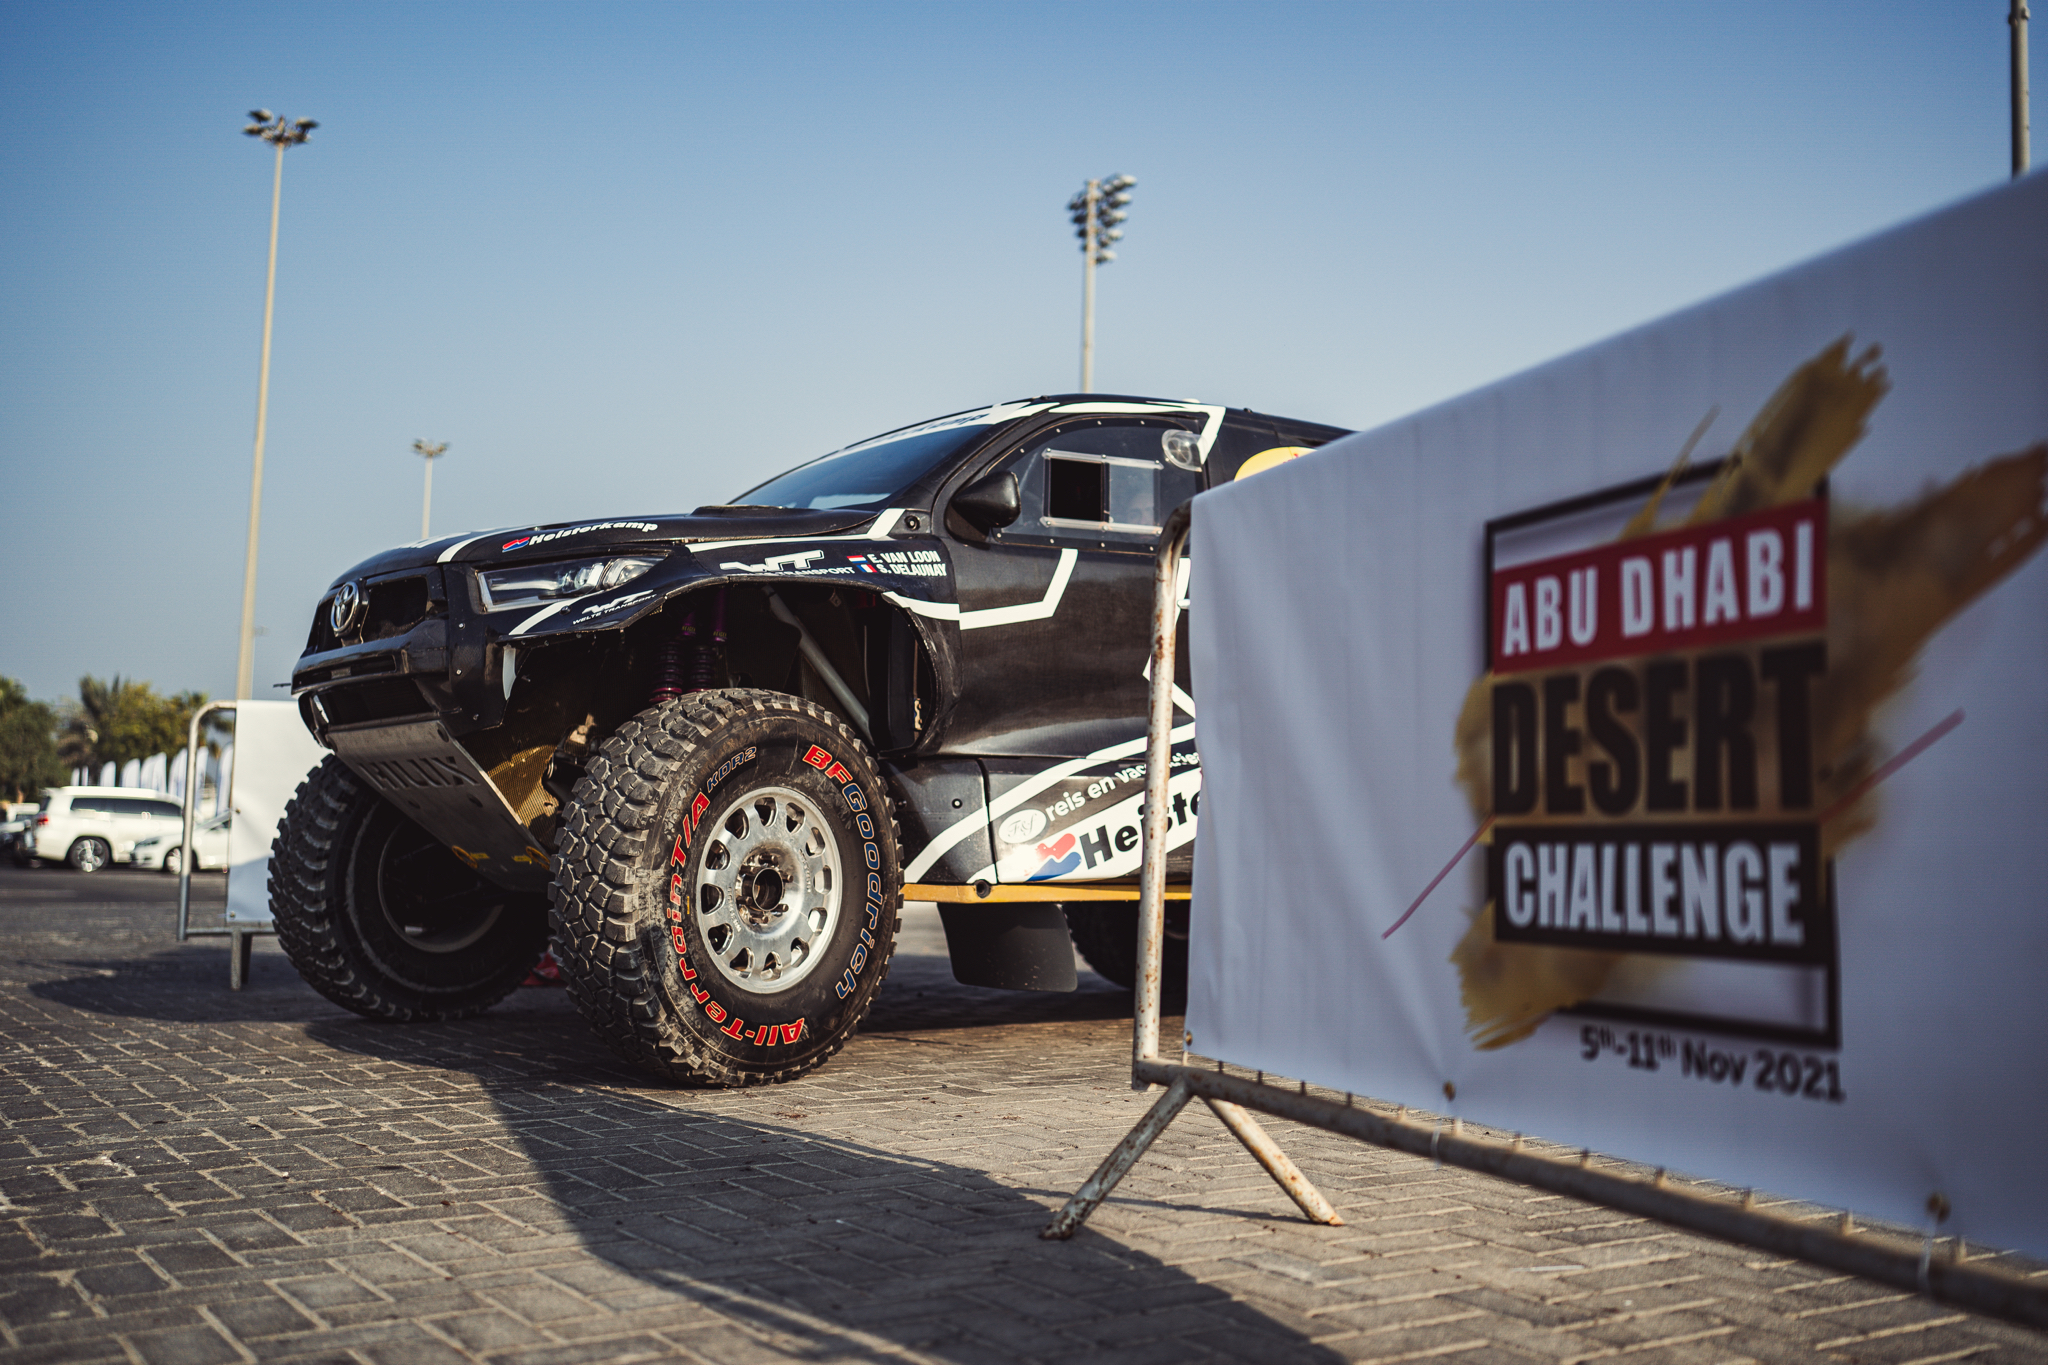 Van Loon klaar voor start van Abu Dhabi Desert Challenge